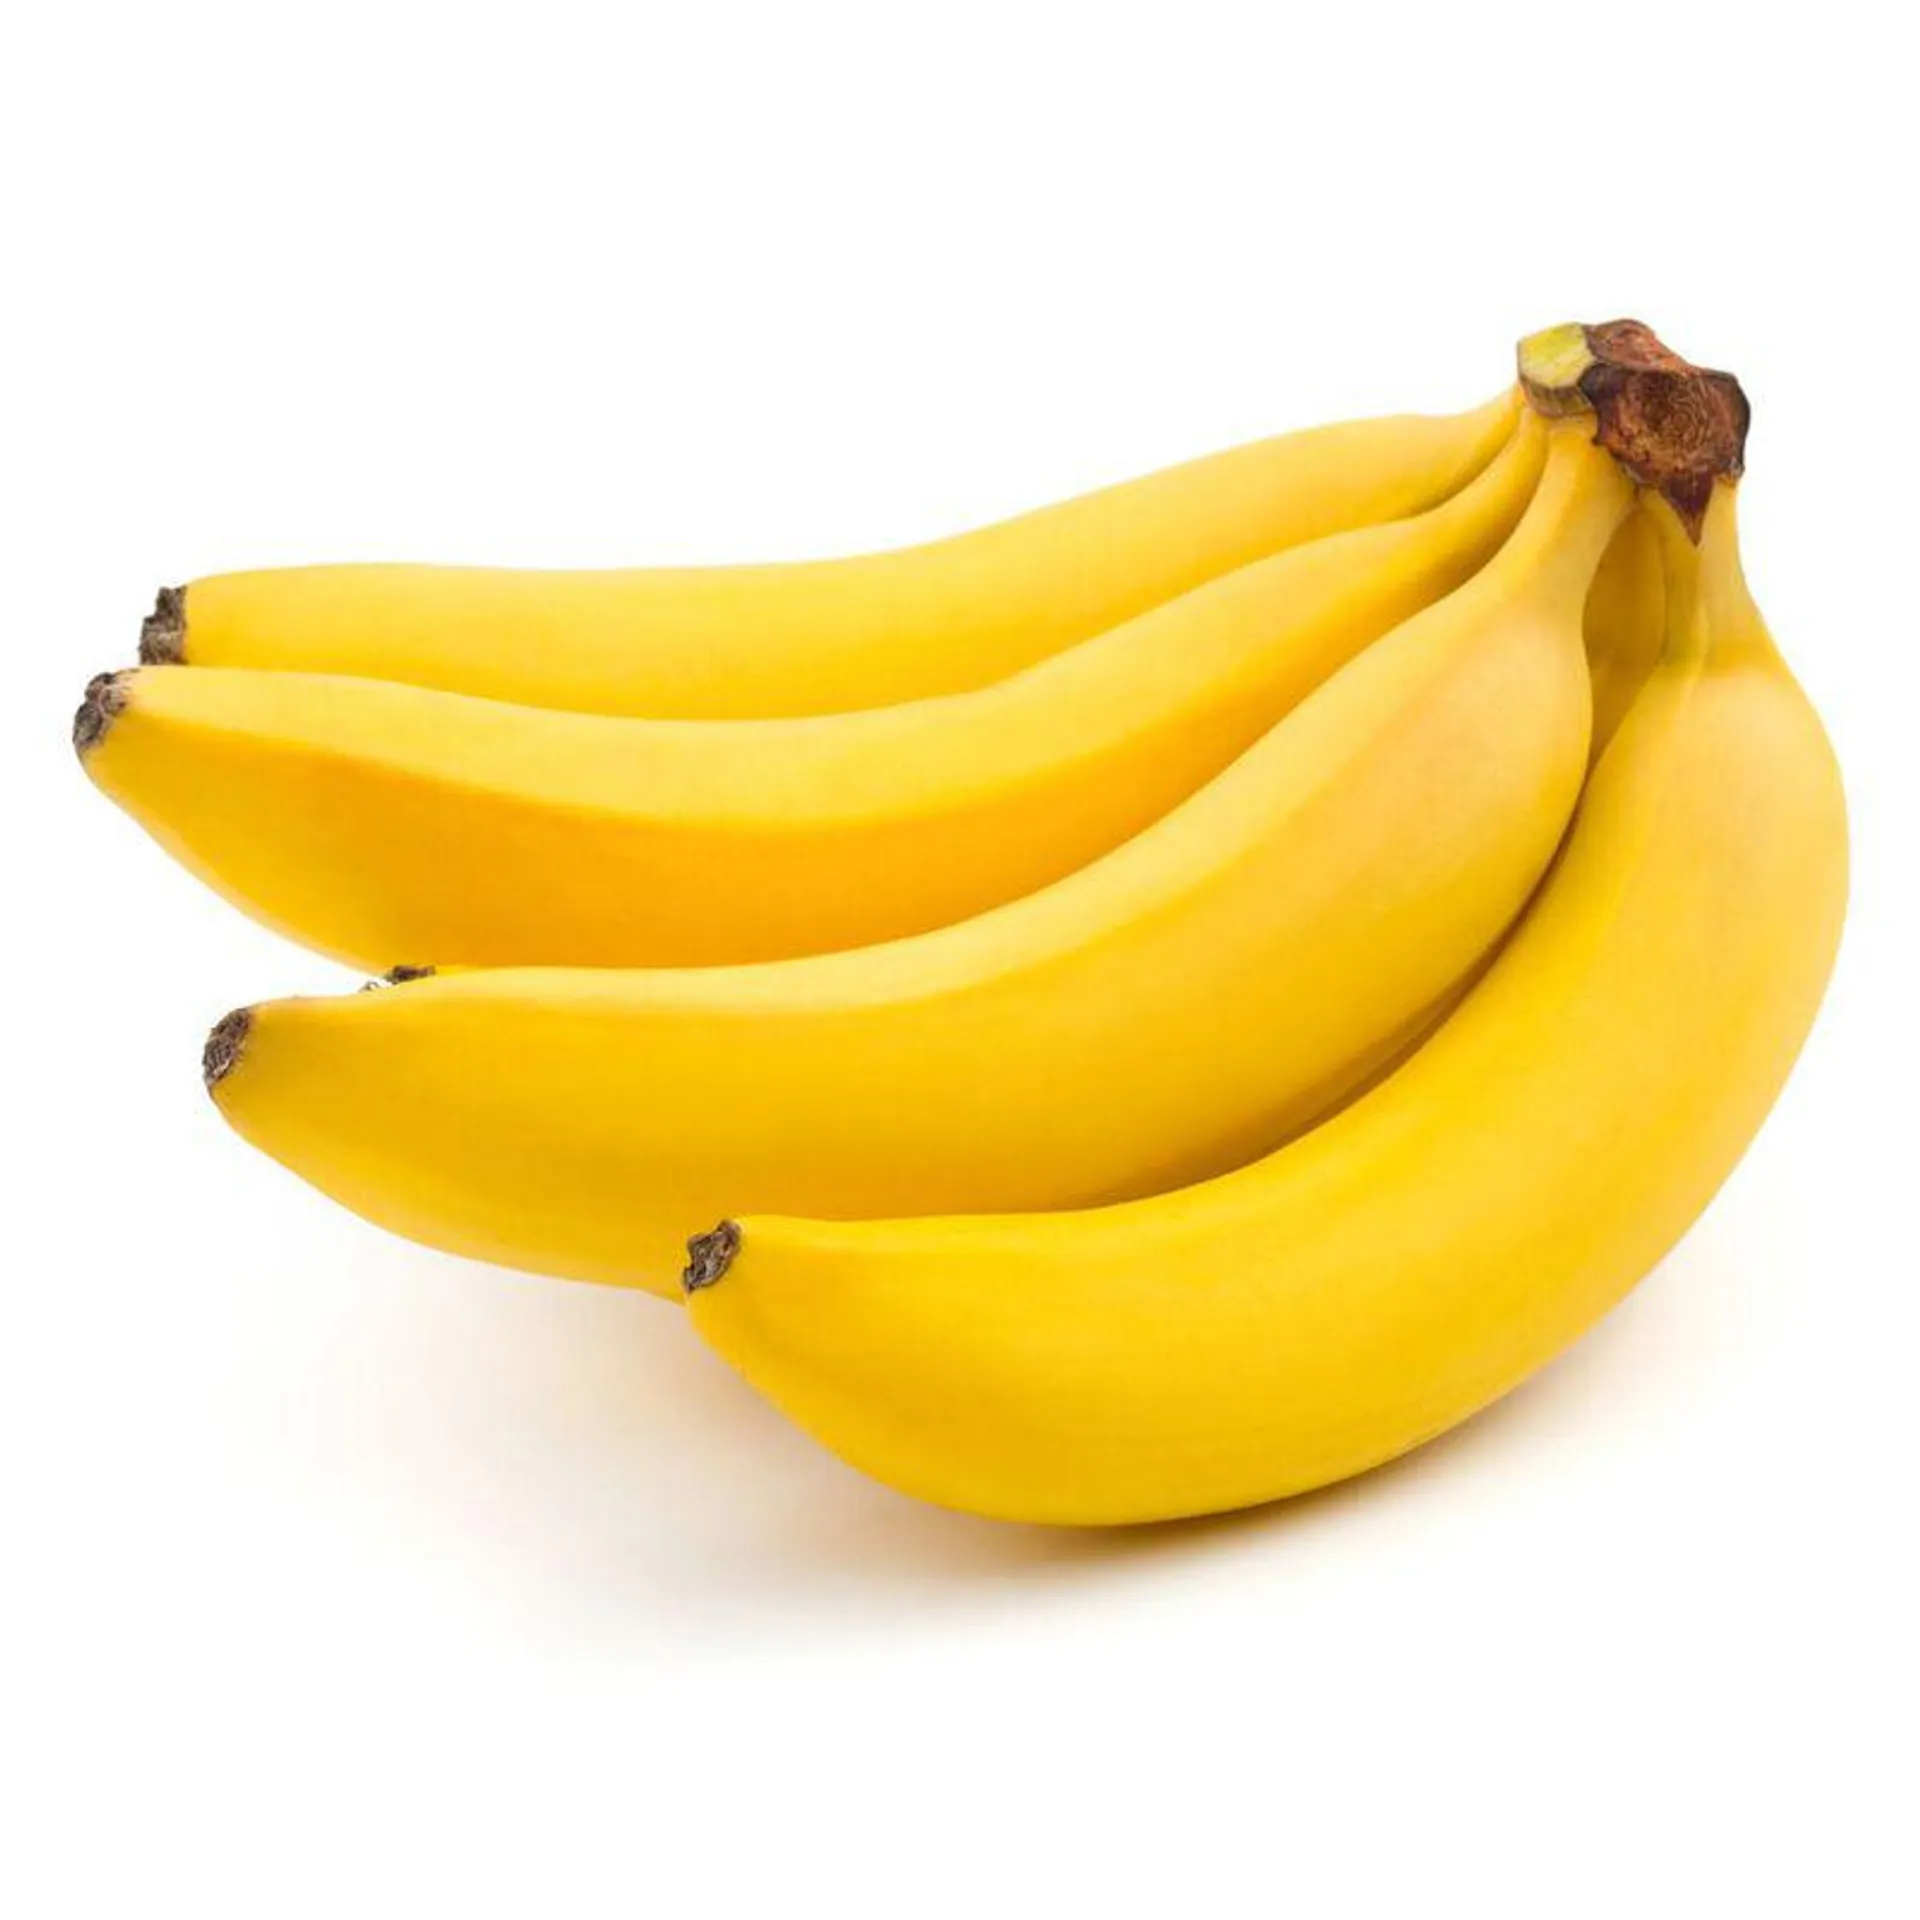 Banana elegida x kg.